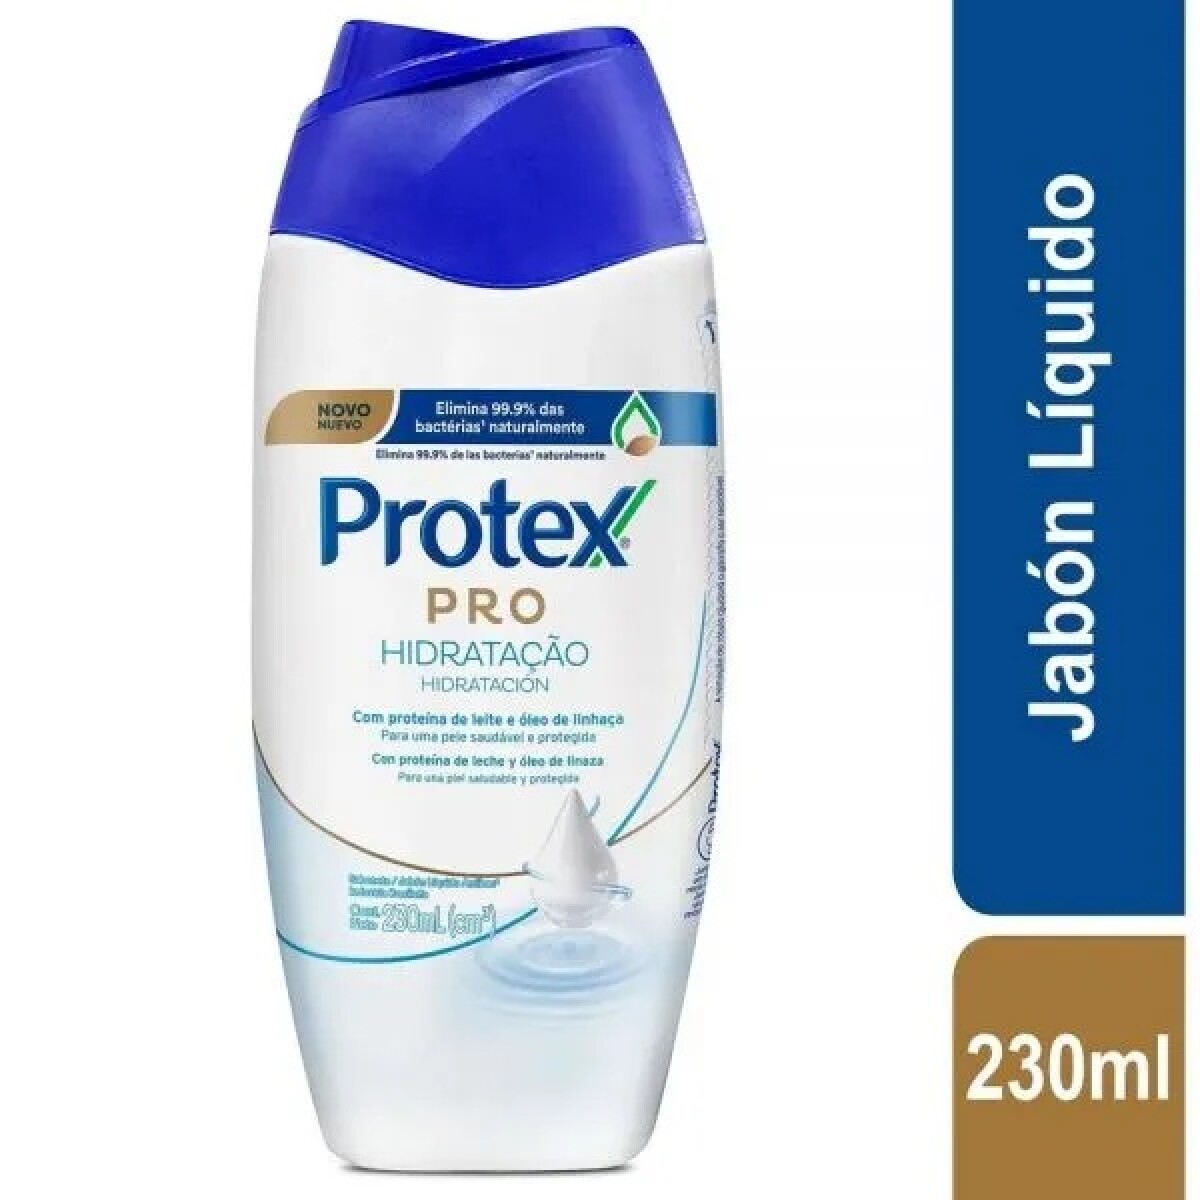 Protex Pro HidrataciÛn Sg 230ml 